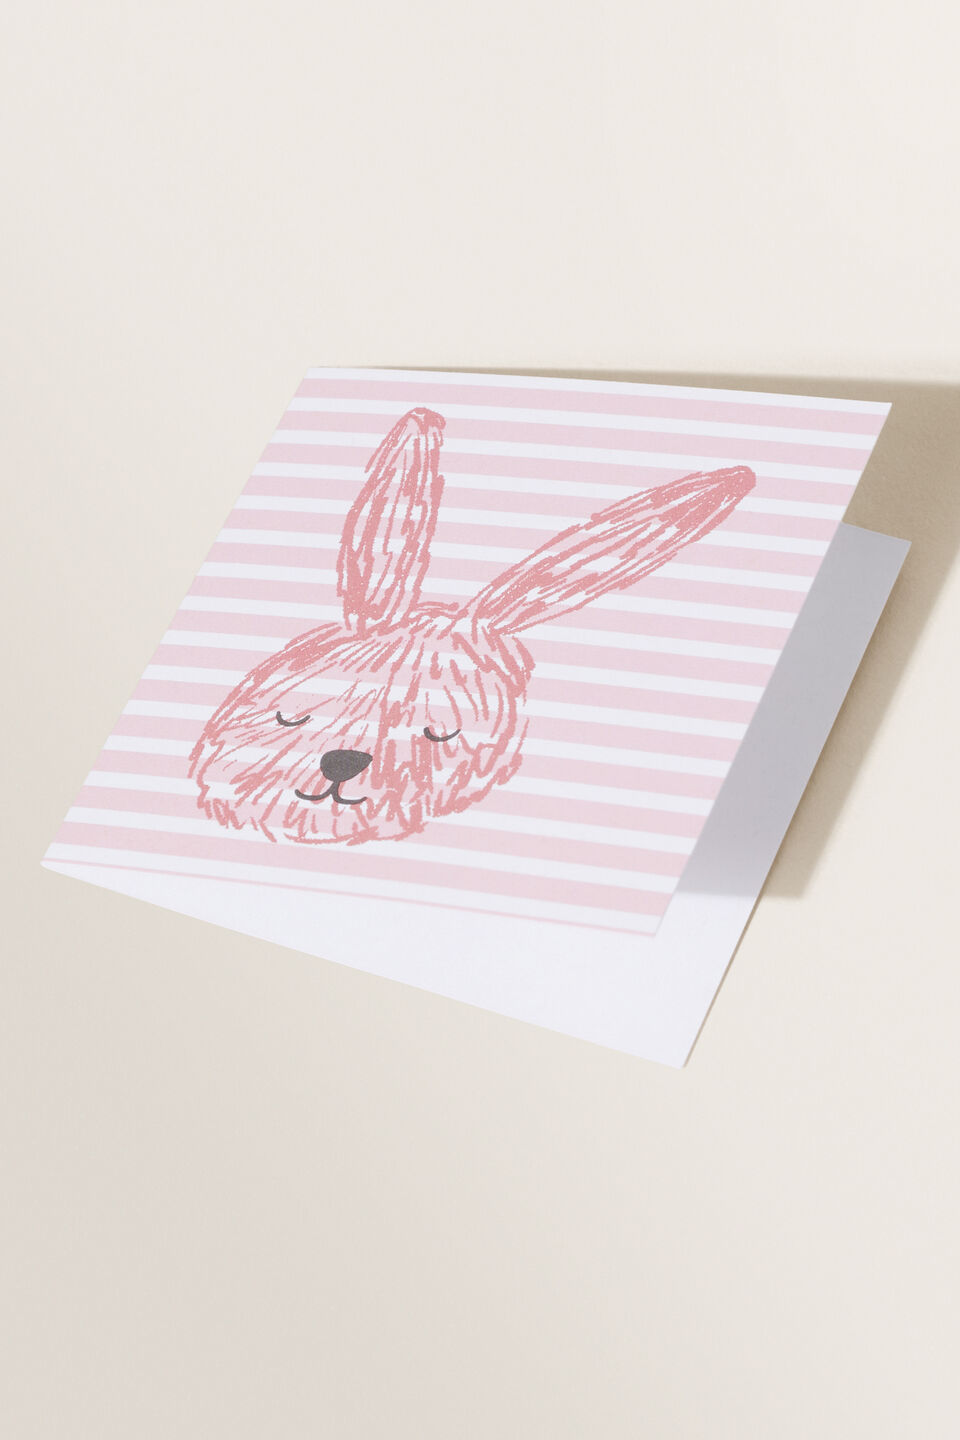 Small Bunny Card  Multi